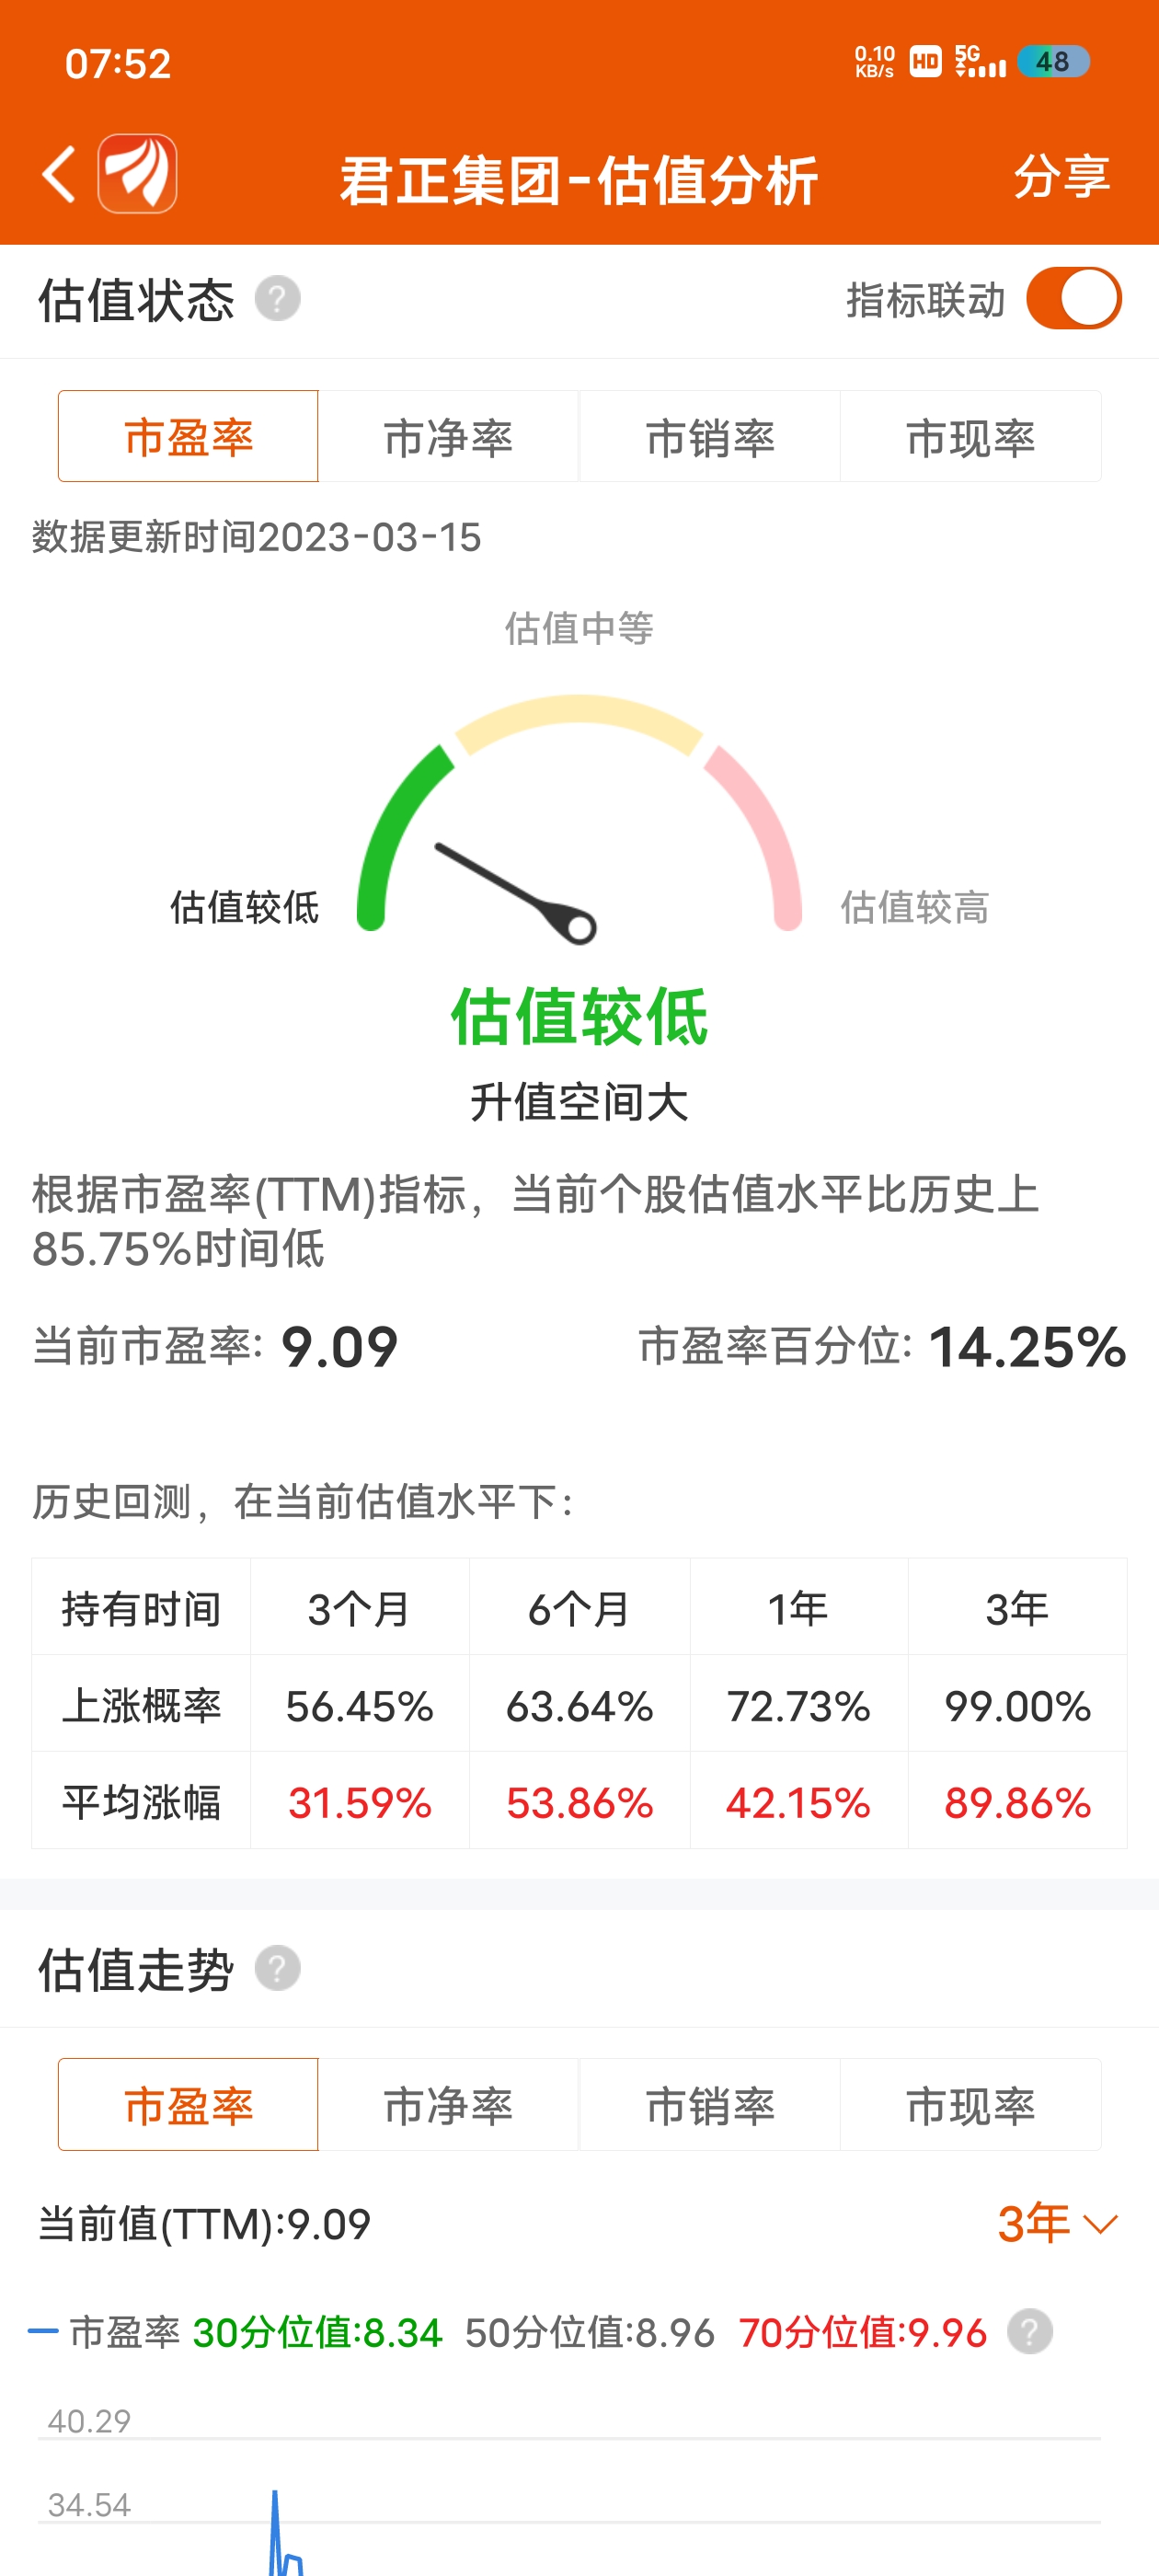 联明集团拟减持不超过3%股份